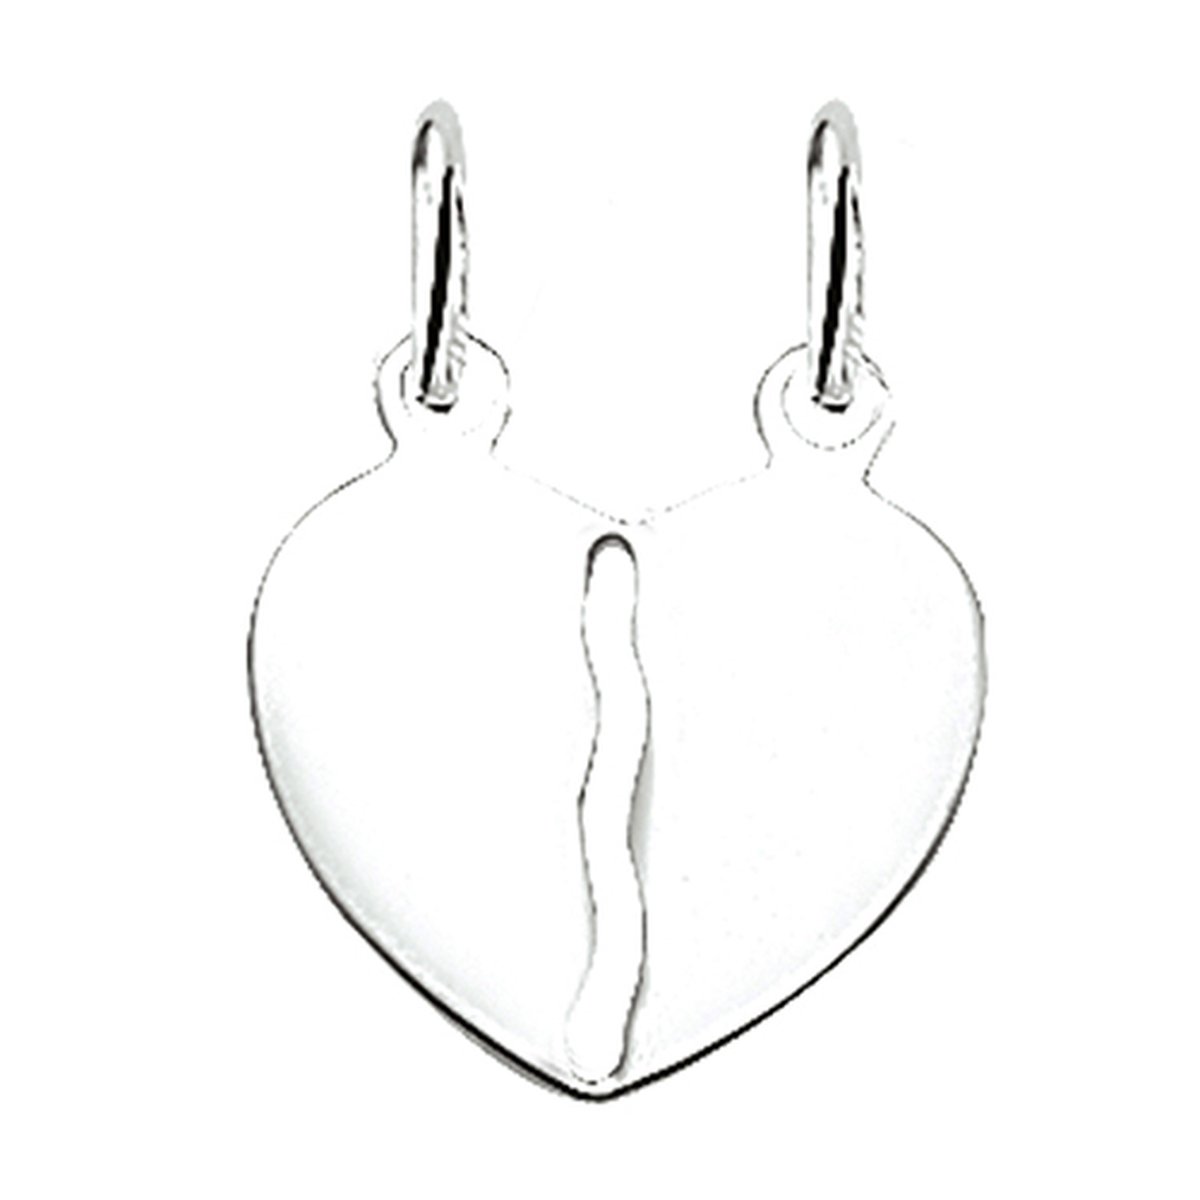 Vriendschapshartje® Breekhartje zilver glad - hanger met 2 zilveren Jasseron kettingen 50cm 1mm - hart hanger - breekhart